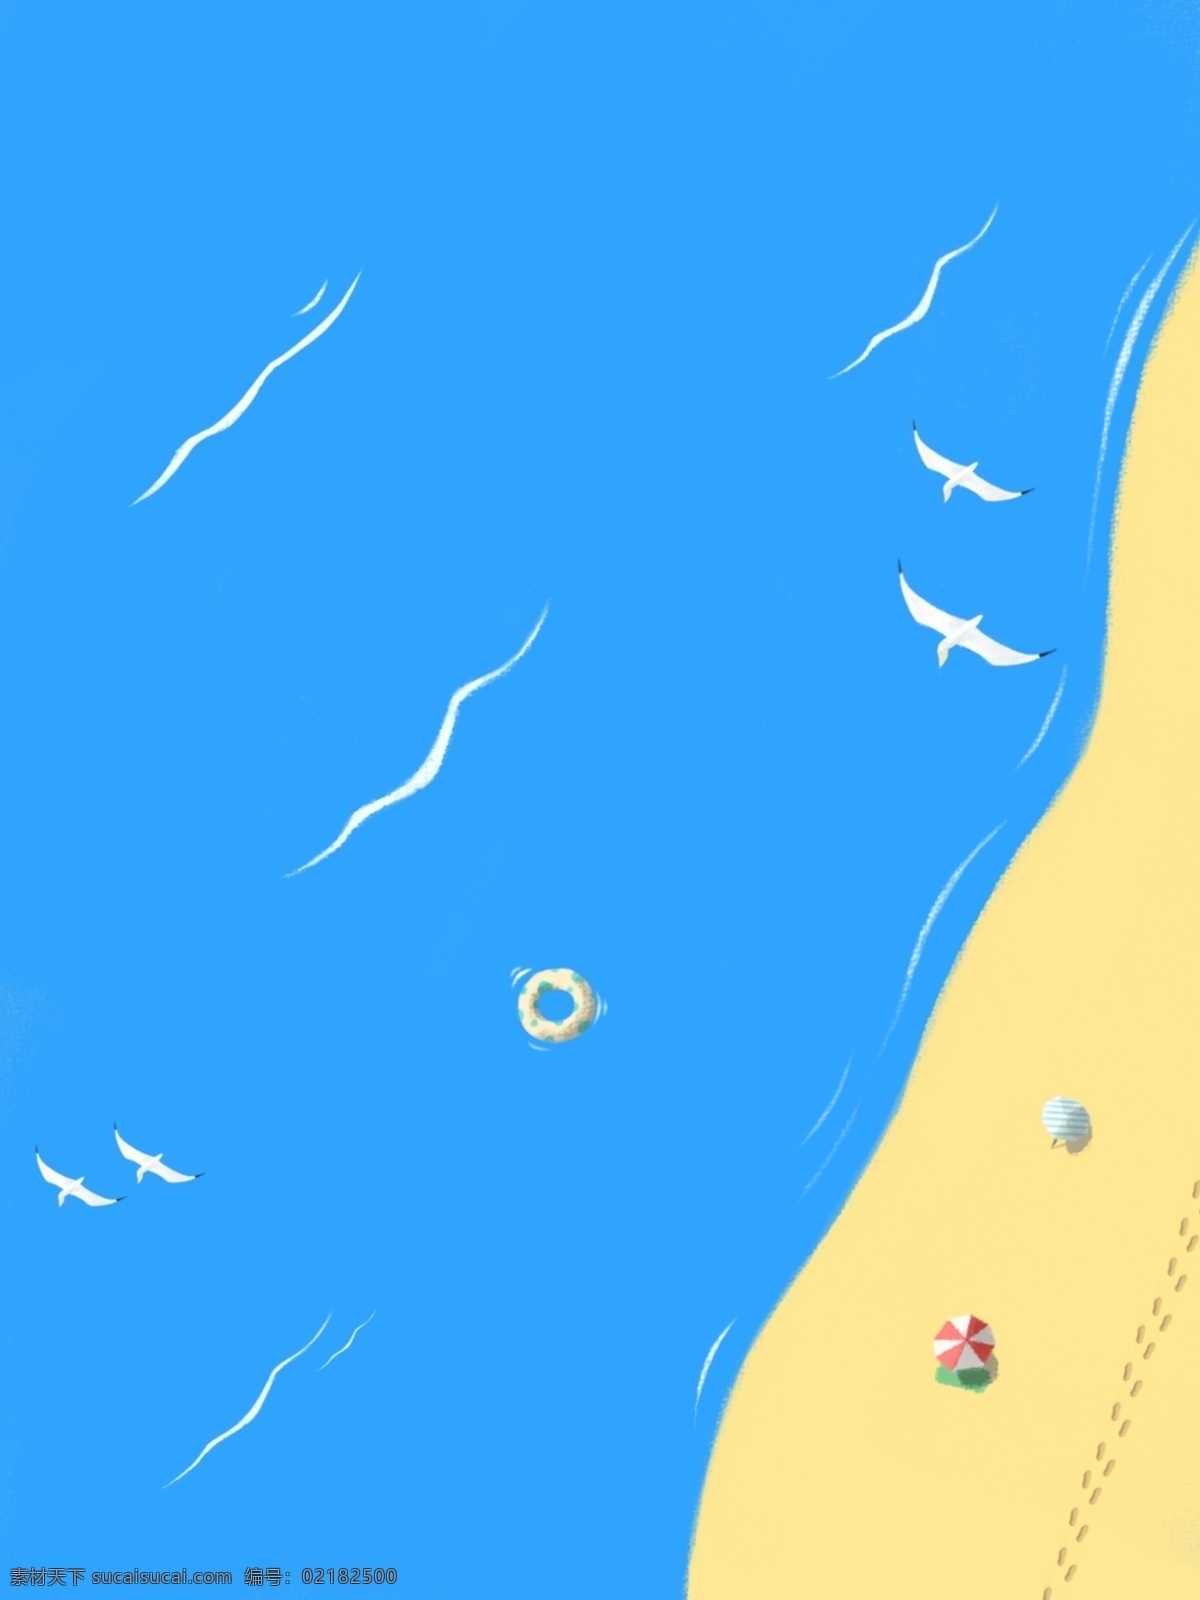 原创 手绘 沙滩 大海 清新 休闲 简约 蓝色 航海 背景